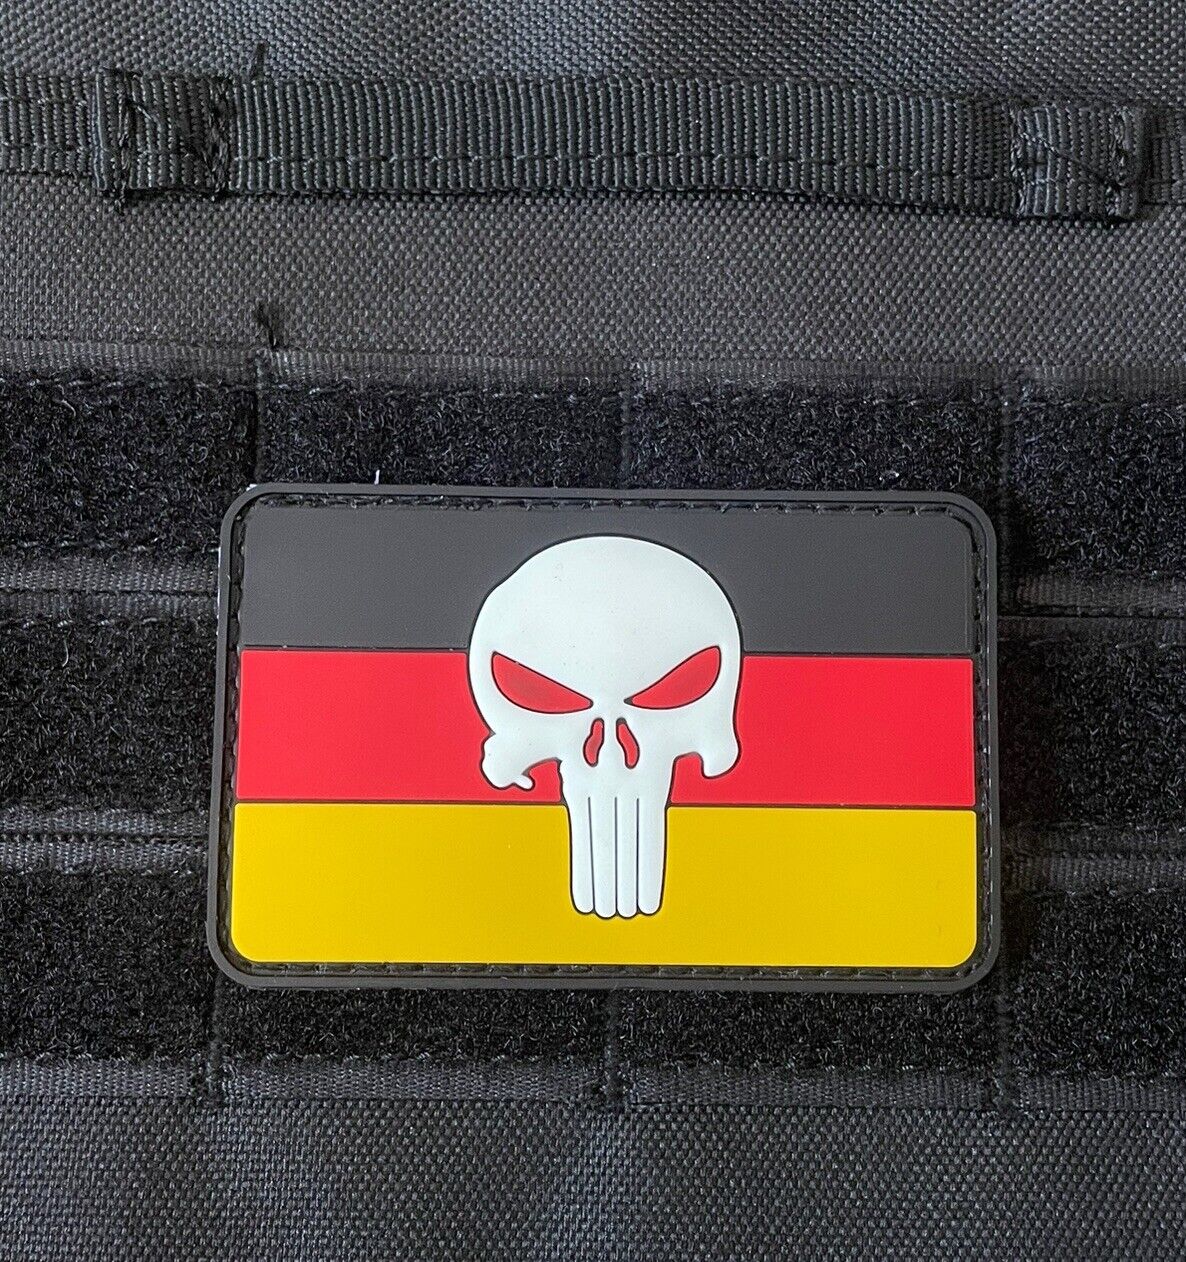 Punisher Skull Flag German Flag Rubber Hook Loop Patch Badge Germany